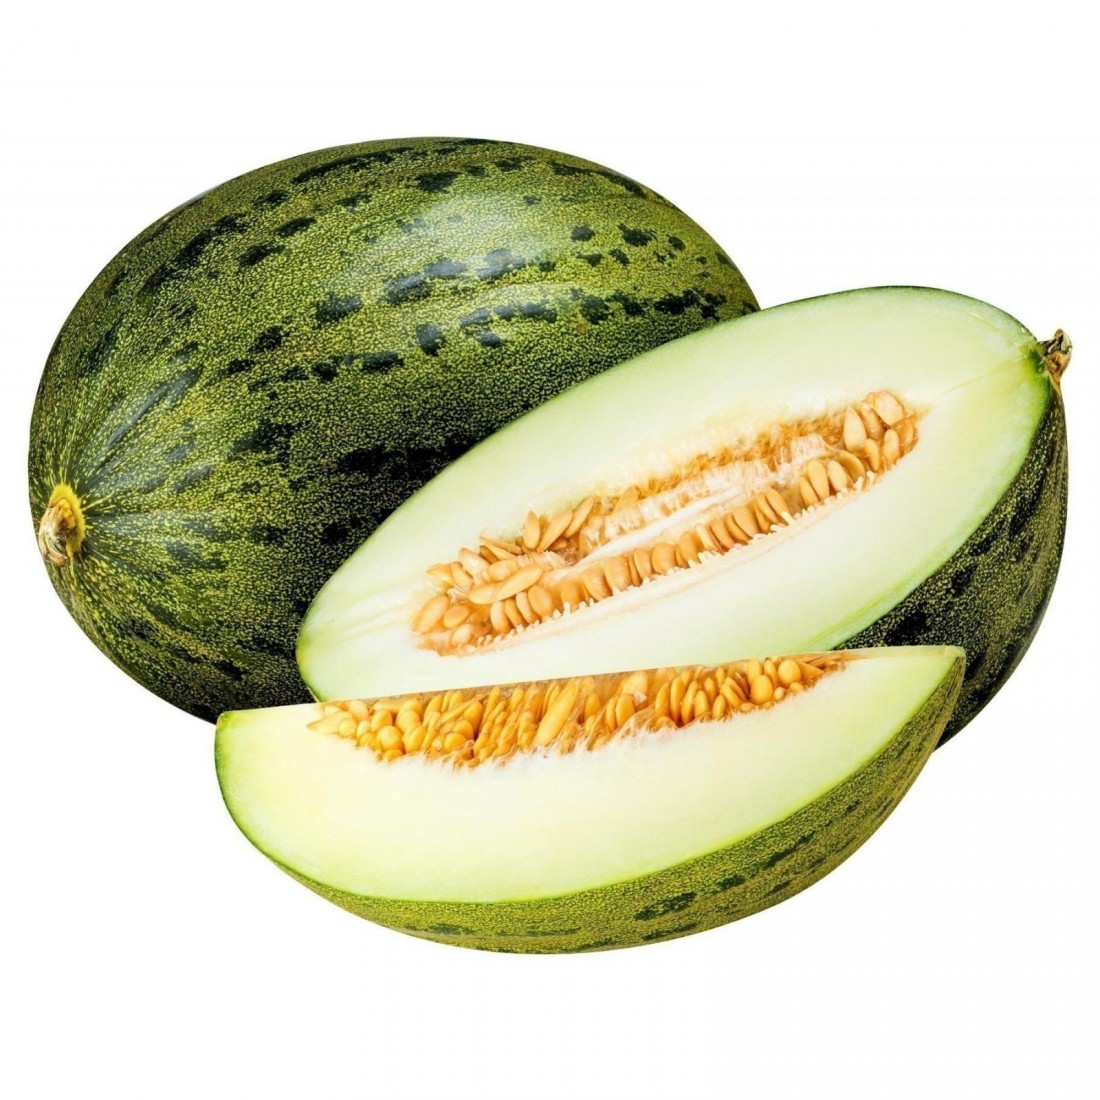 Australia Sapo Melon